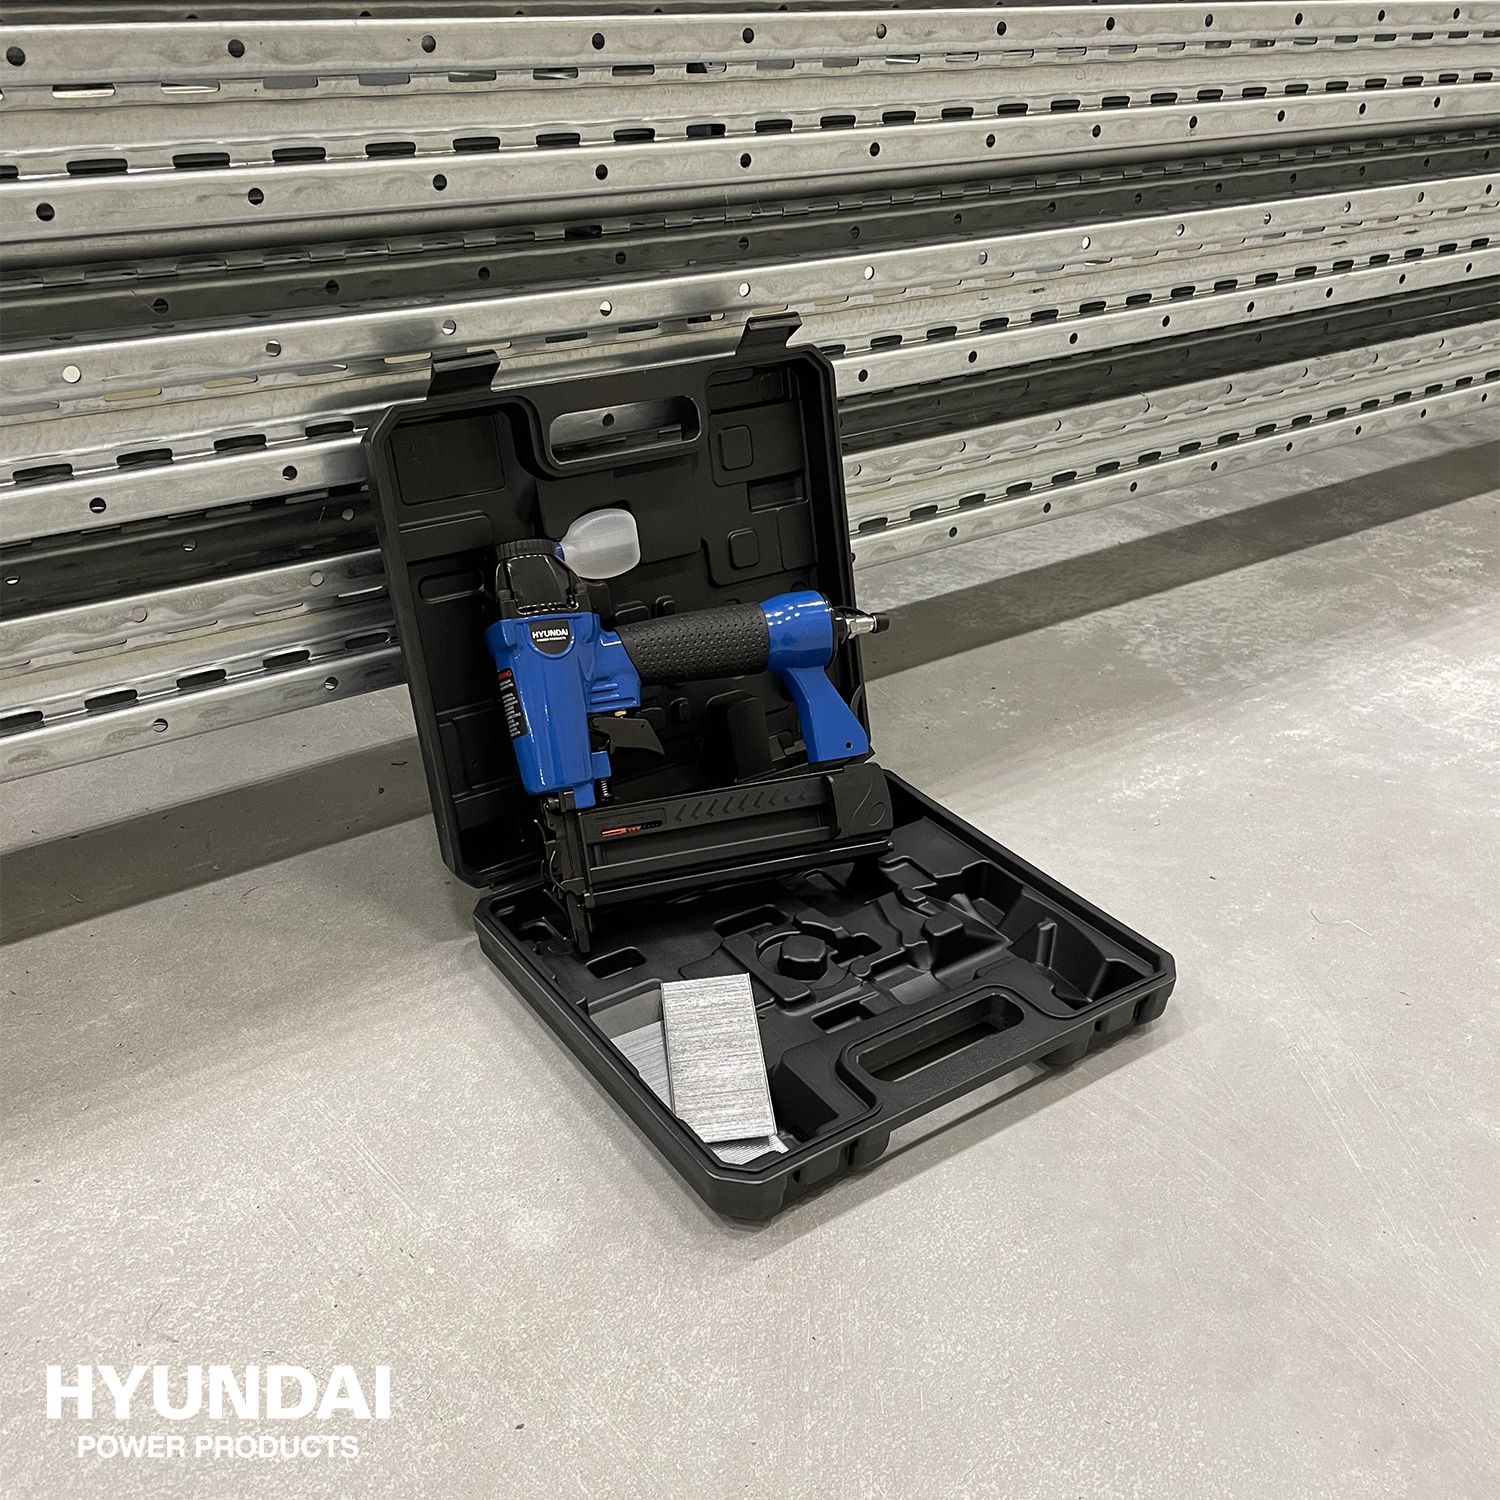 Hyundai 2-in-1 pneumatische tacker